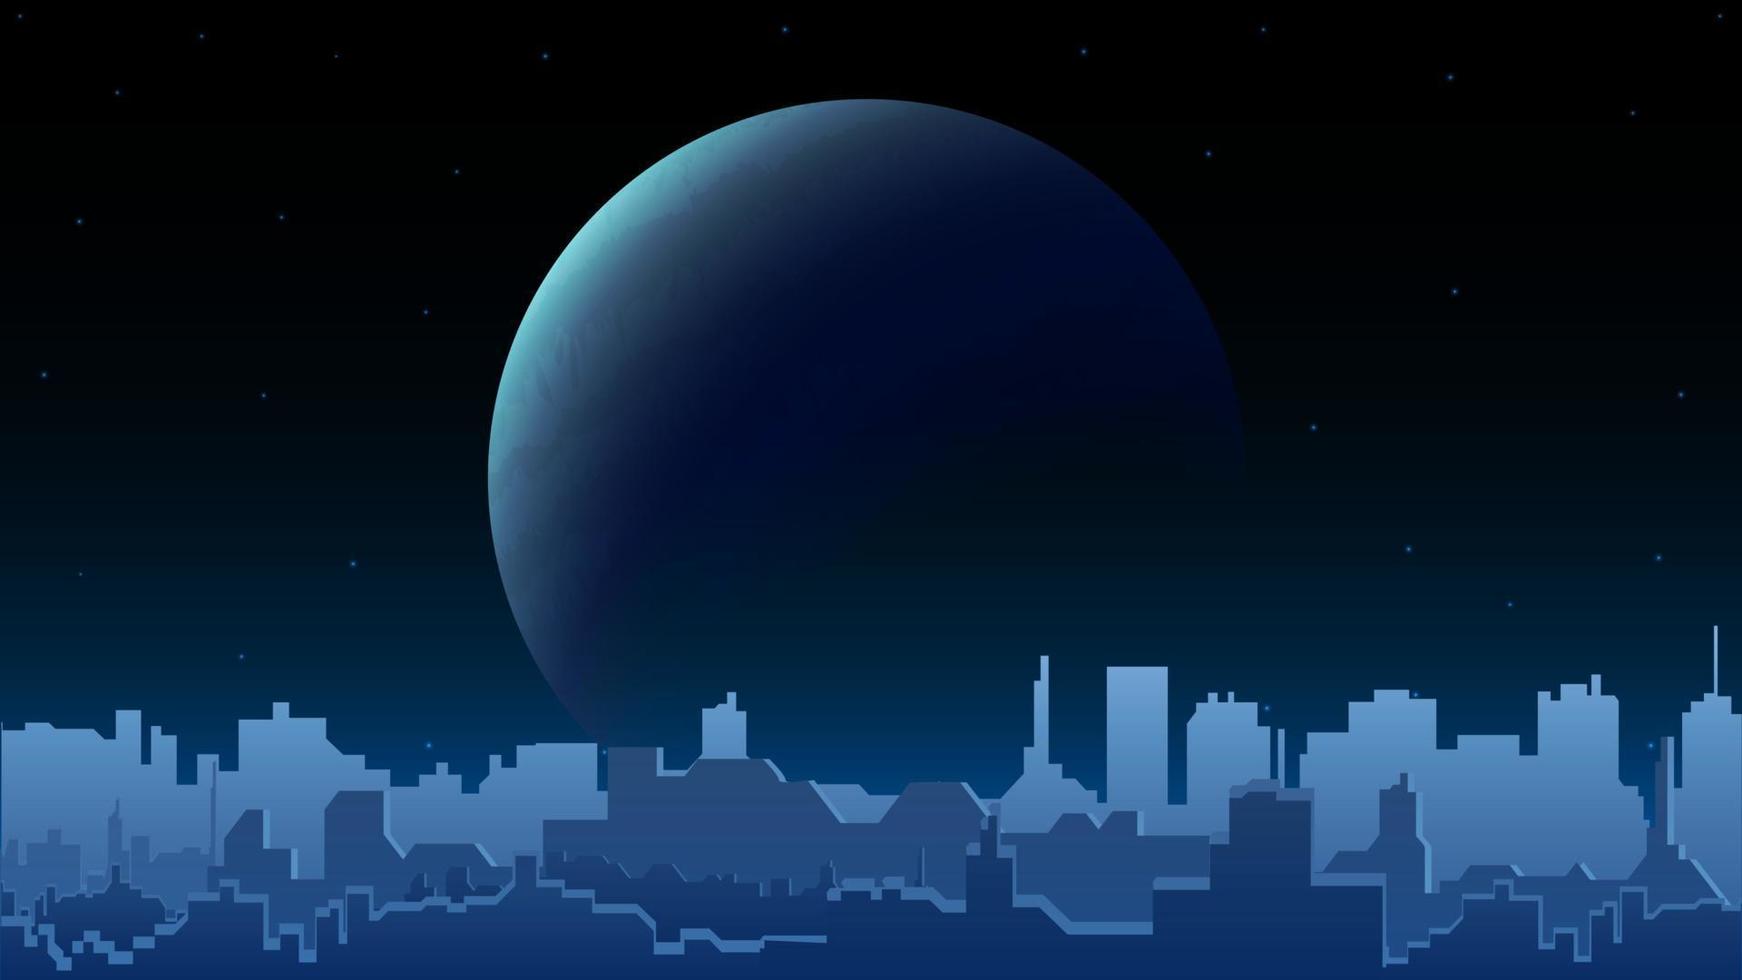 paysage urbain nocturne avec une grande planète à l'horizon et la silhouette d'une ville moderne avec des immeubles de grande hauteur. paysage de ville de nuit bleue vecteur